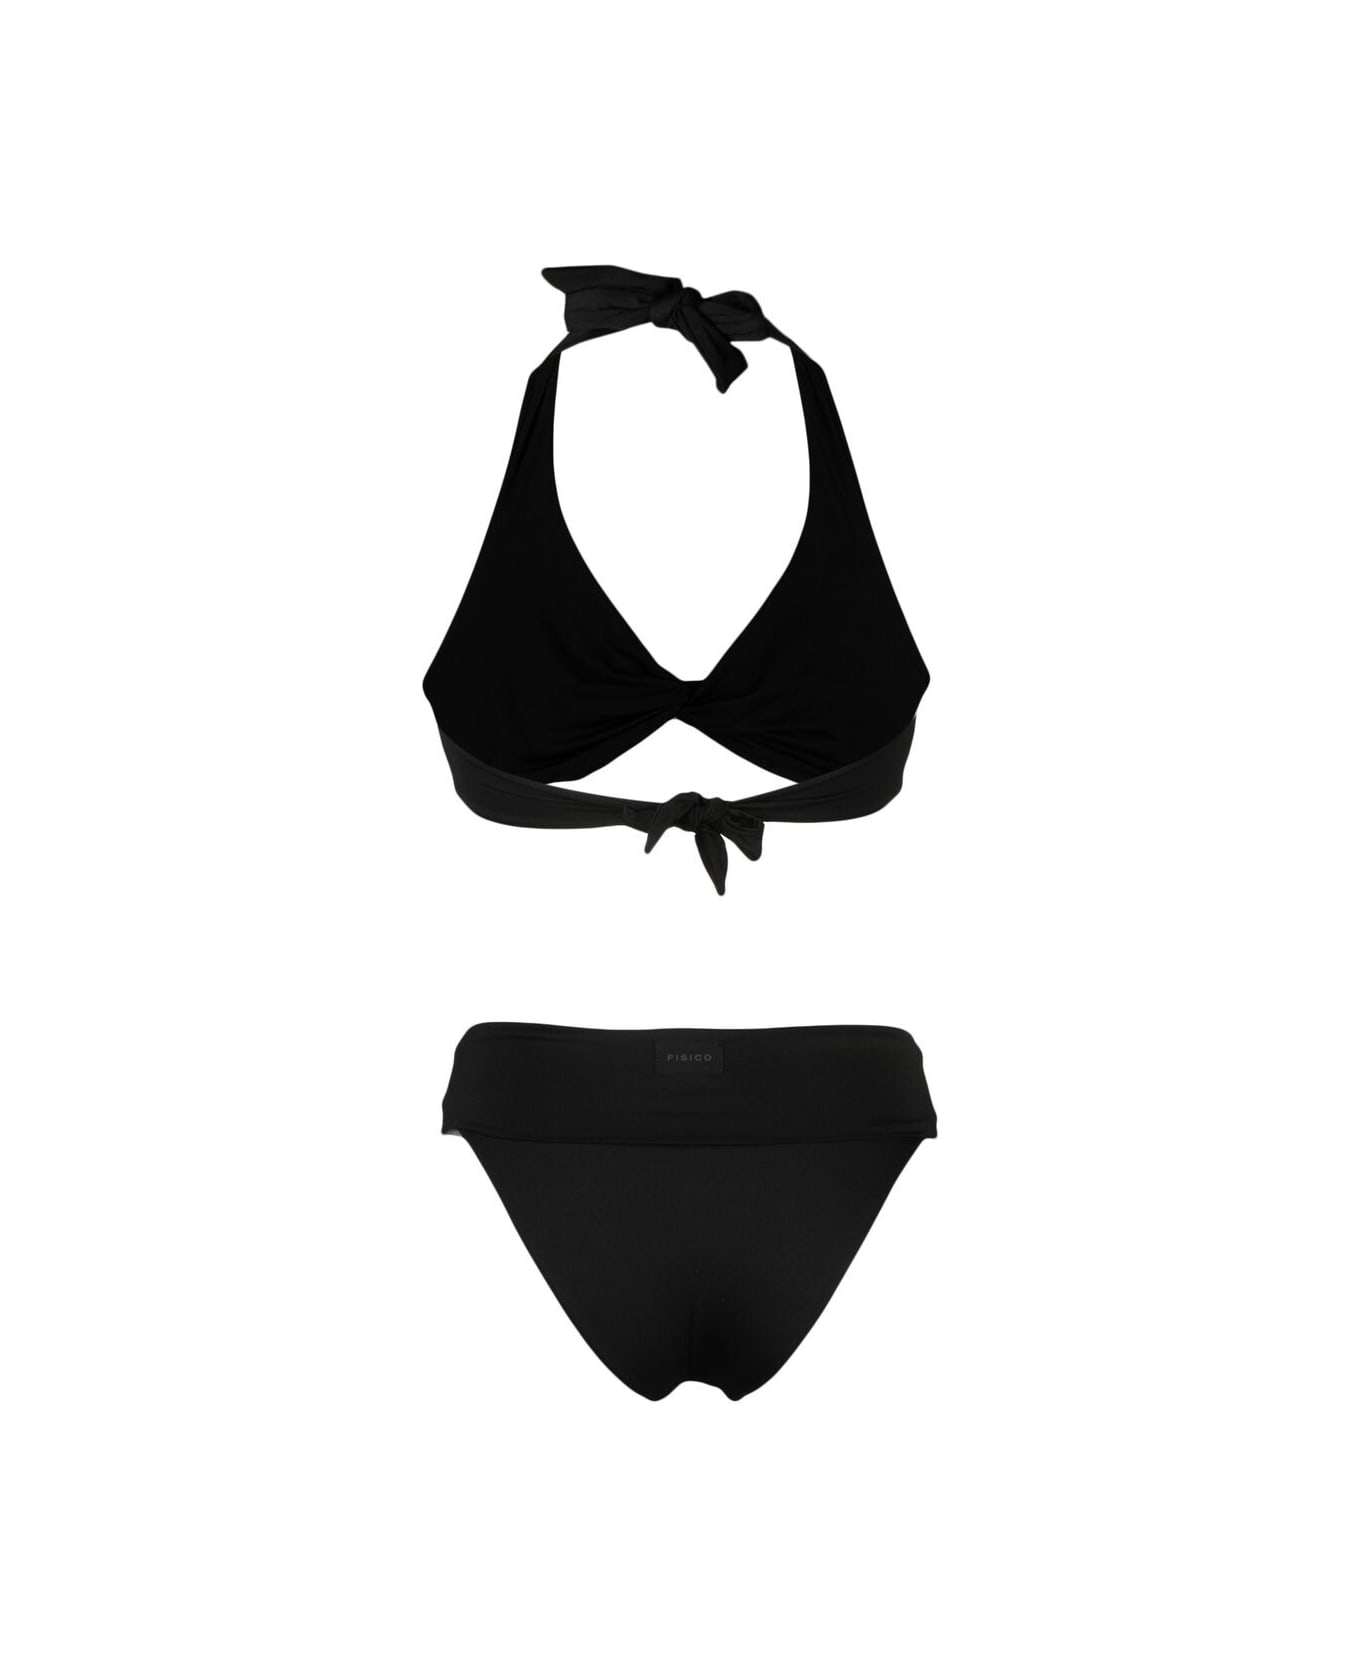 Fisico - Cristina Ferrari Bikini Incrocio - Black